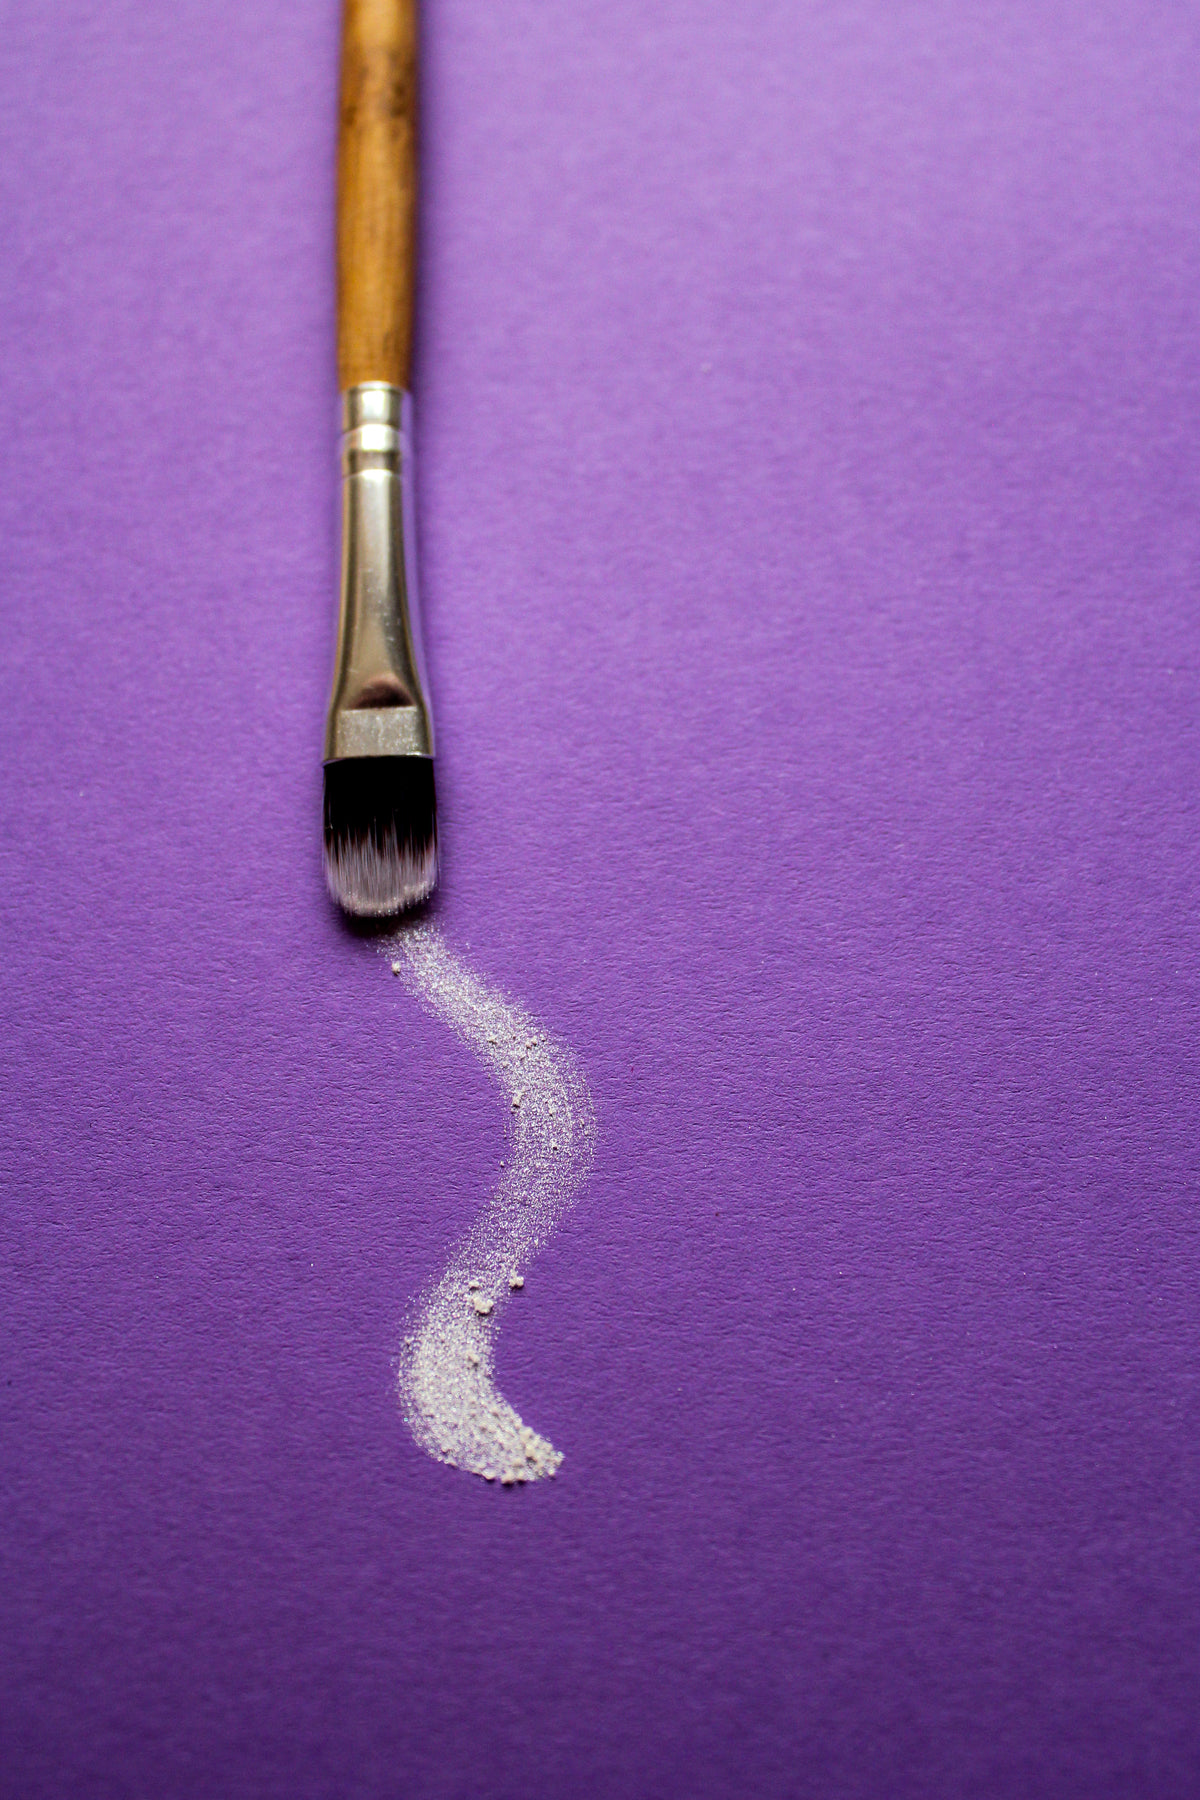 a paintbrush trails white paint on purple paper